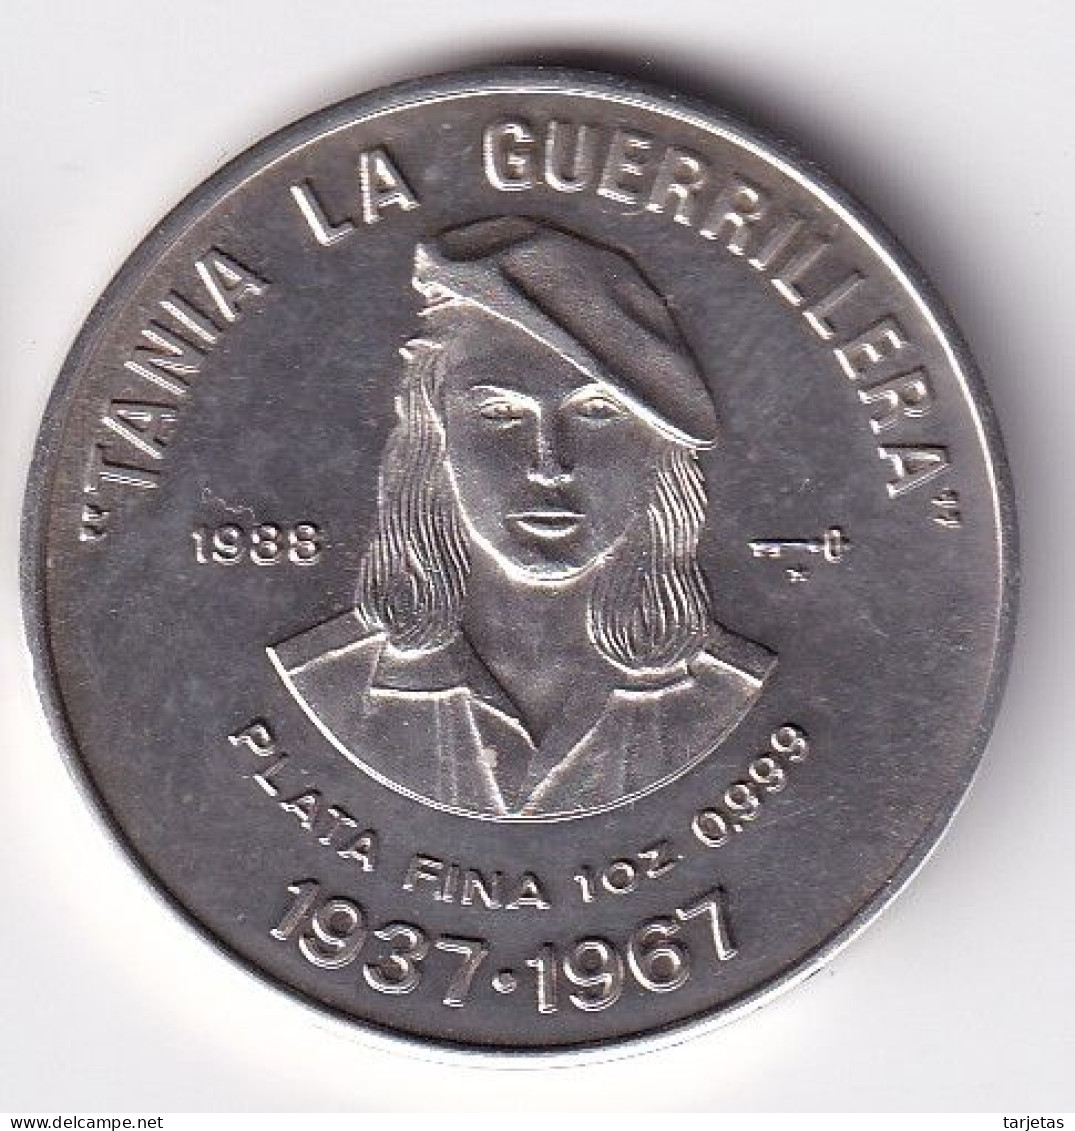 MONEDA DE PLATA DE CUBA DE 10 PESOS DEL AÑO 1988 DE TANIA LA GUERRILLERA (SILVER-ARGENT) - Cuba